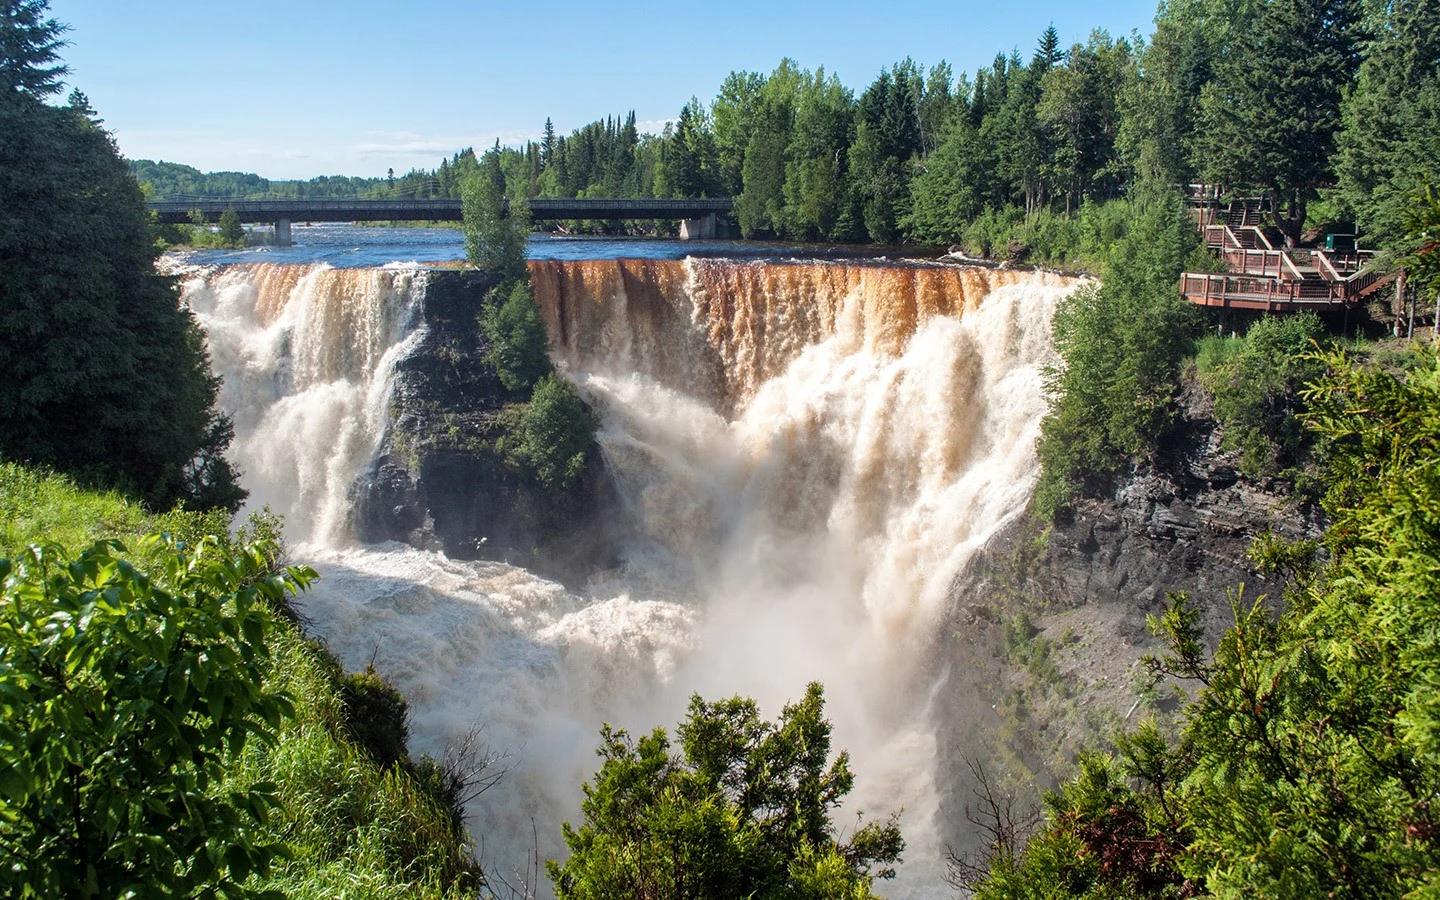 Waterfall at Kakabeka Falls Provincial Park in Ontario, Canada